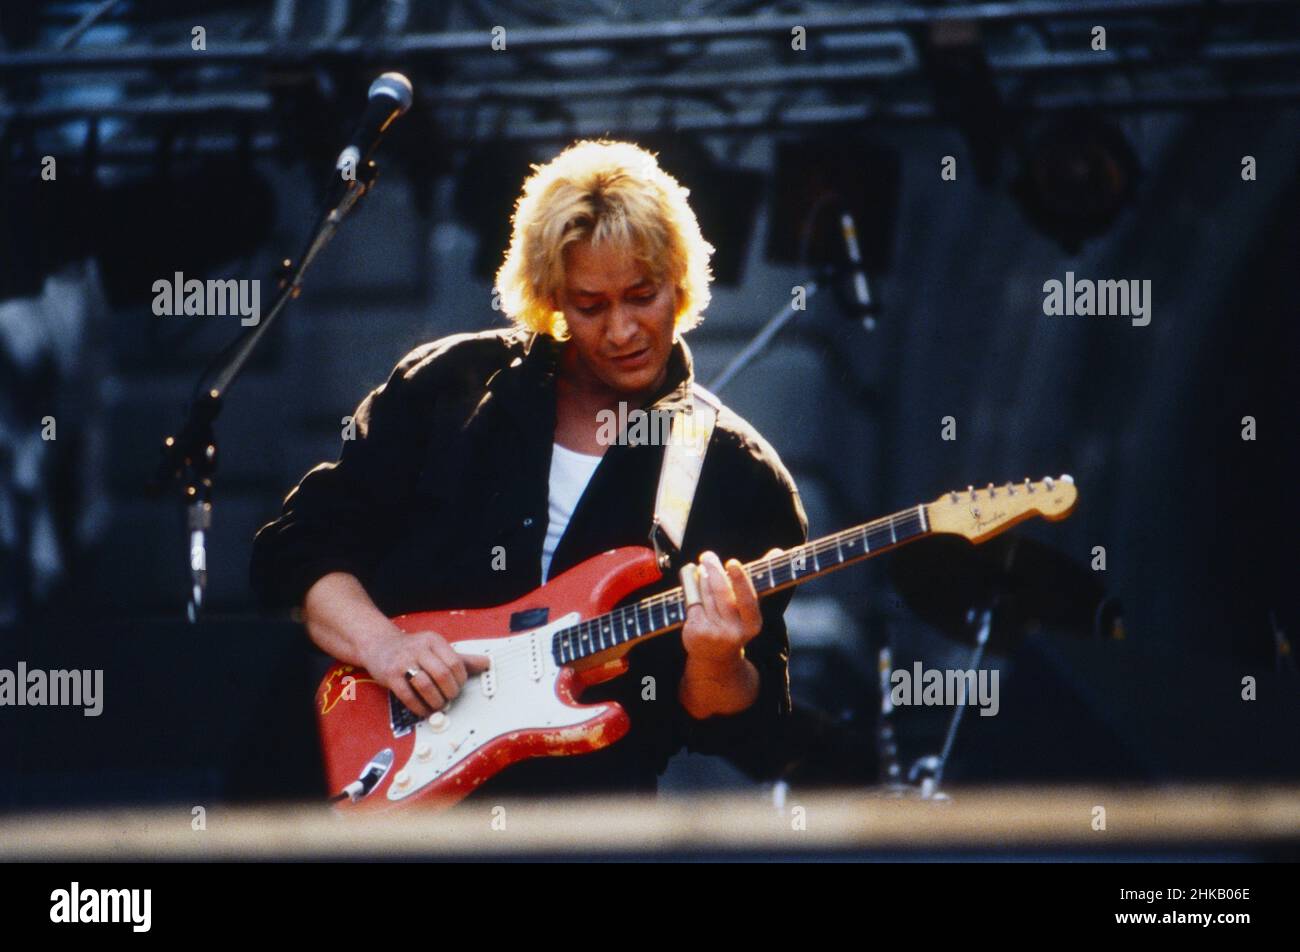 Chris Rea, britischer Sänger, Komponist und Gitarrist, bei einem Auftritt, Deutschland 1984. Stock Photo